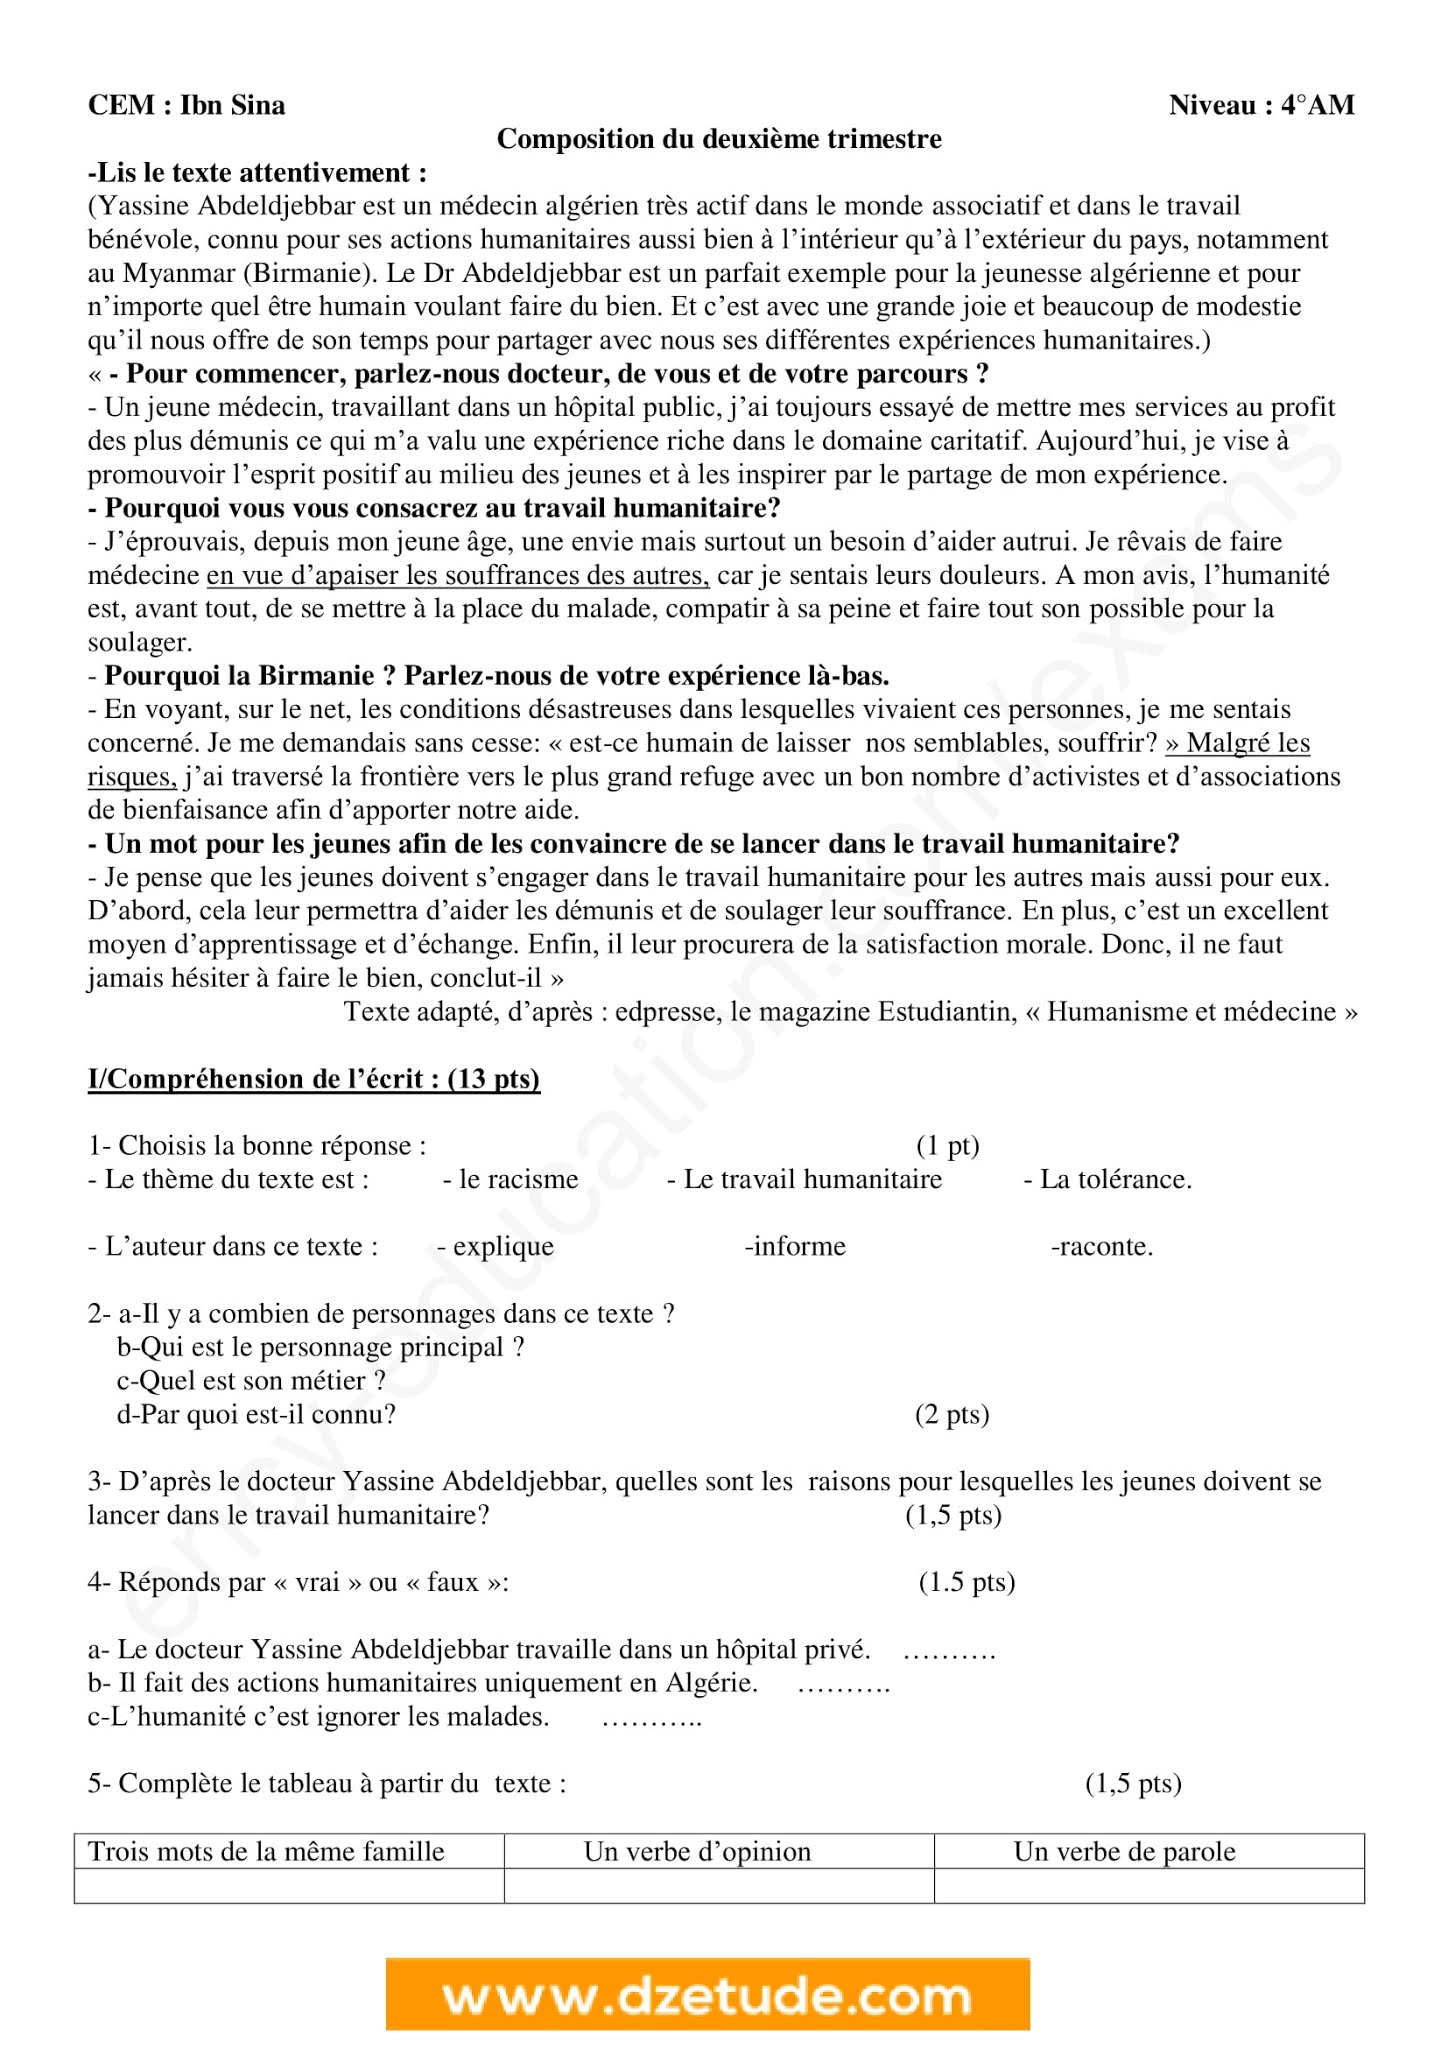 إختبار اللغة الفرنسية الفصل الثاني للسنة الرابعة متوسط - الجيل الثاني نموذج 2